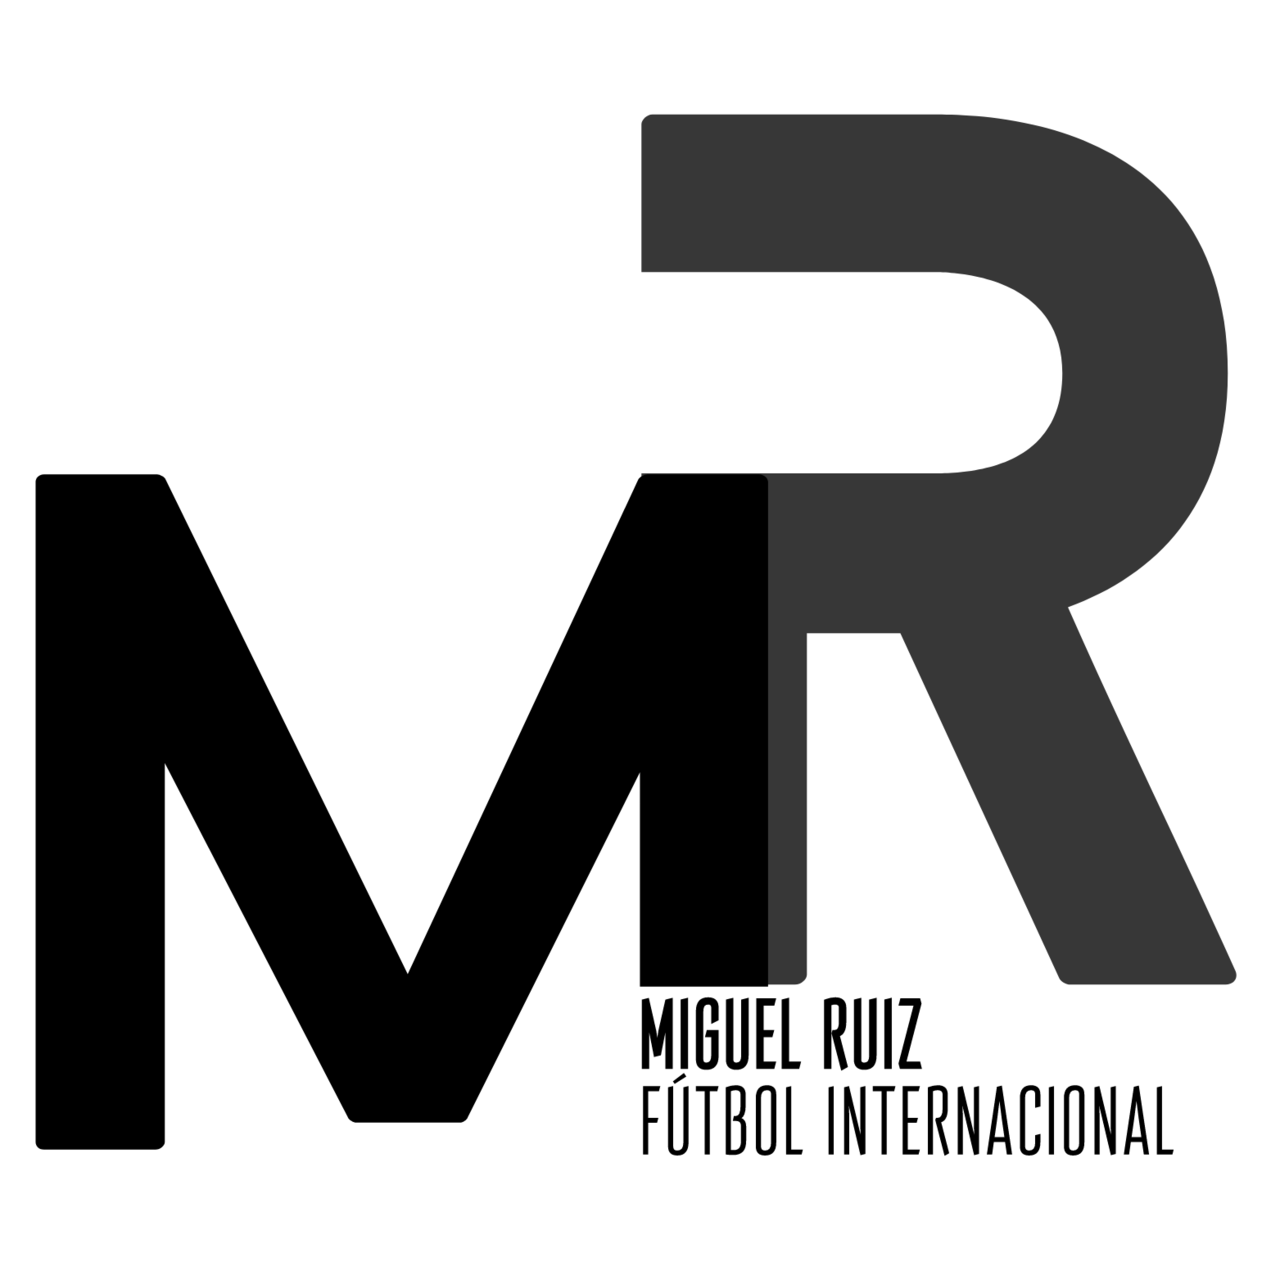 Miguel Ruiz